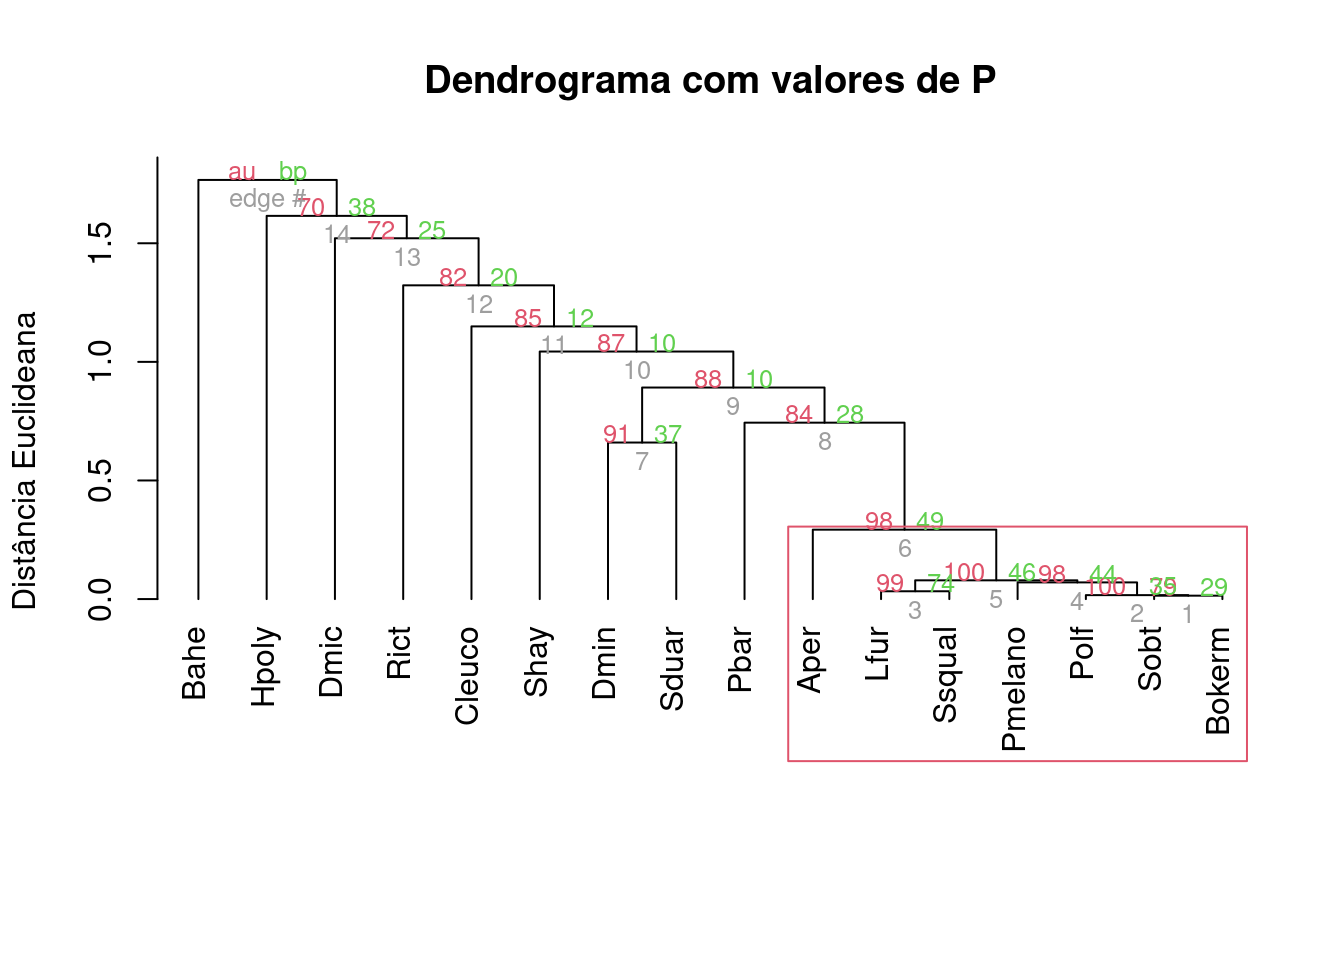 Dendrograma mostrando uma análise de agrupamento de anuros com uma linha de corte criada por bootstrap e usando distância de Chord.